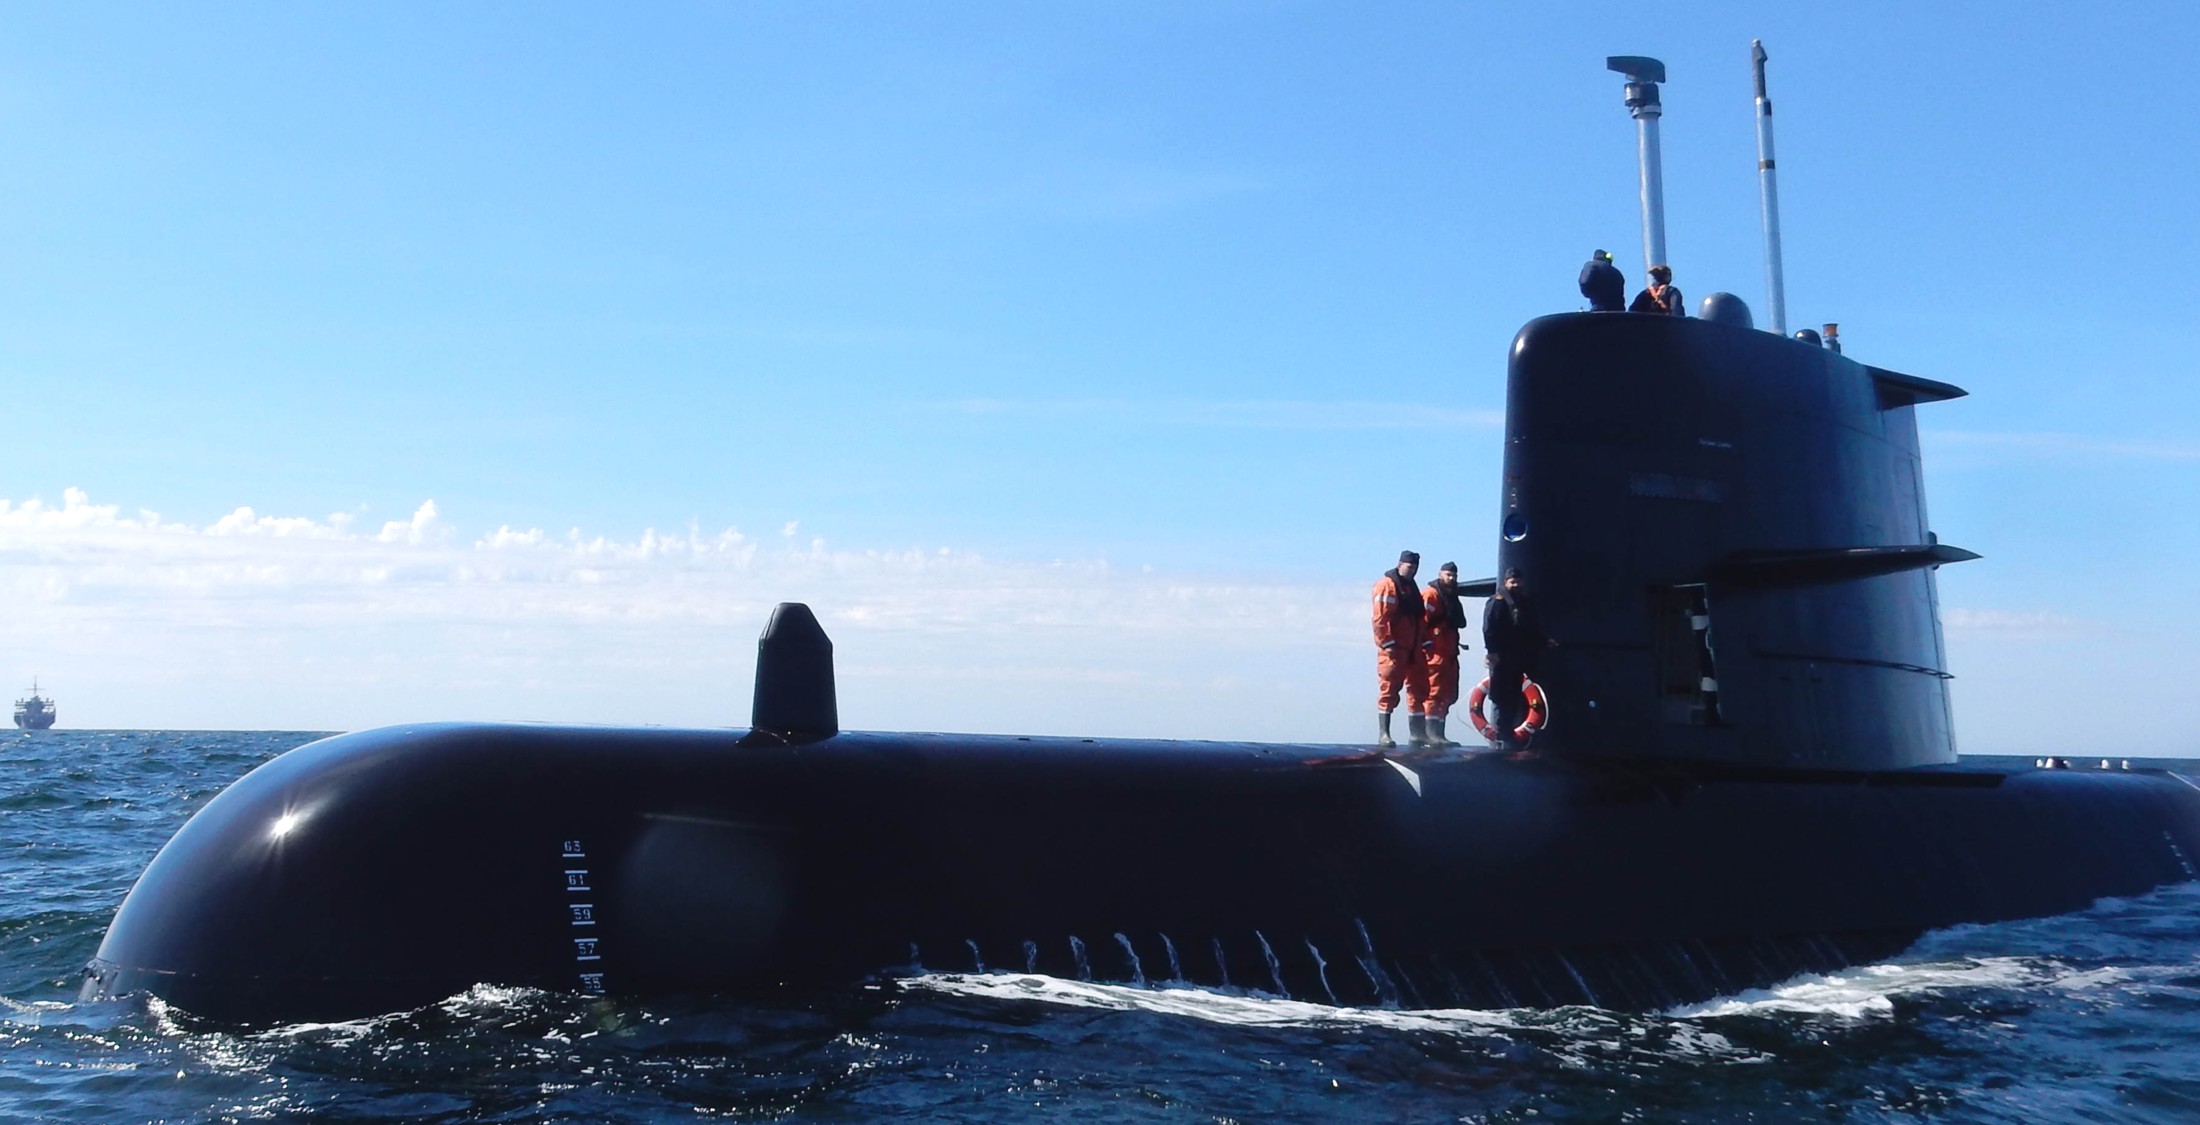 hswms hms halland hnd gotland class submarine ssk swedish navy svenska marinen försvarsmakten kockums 06